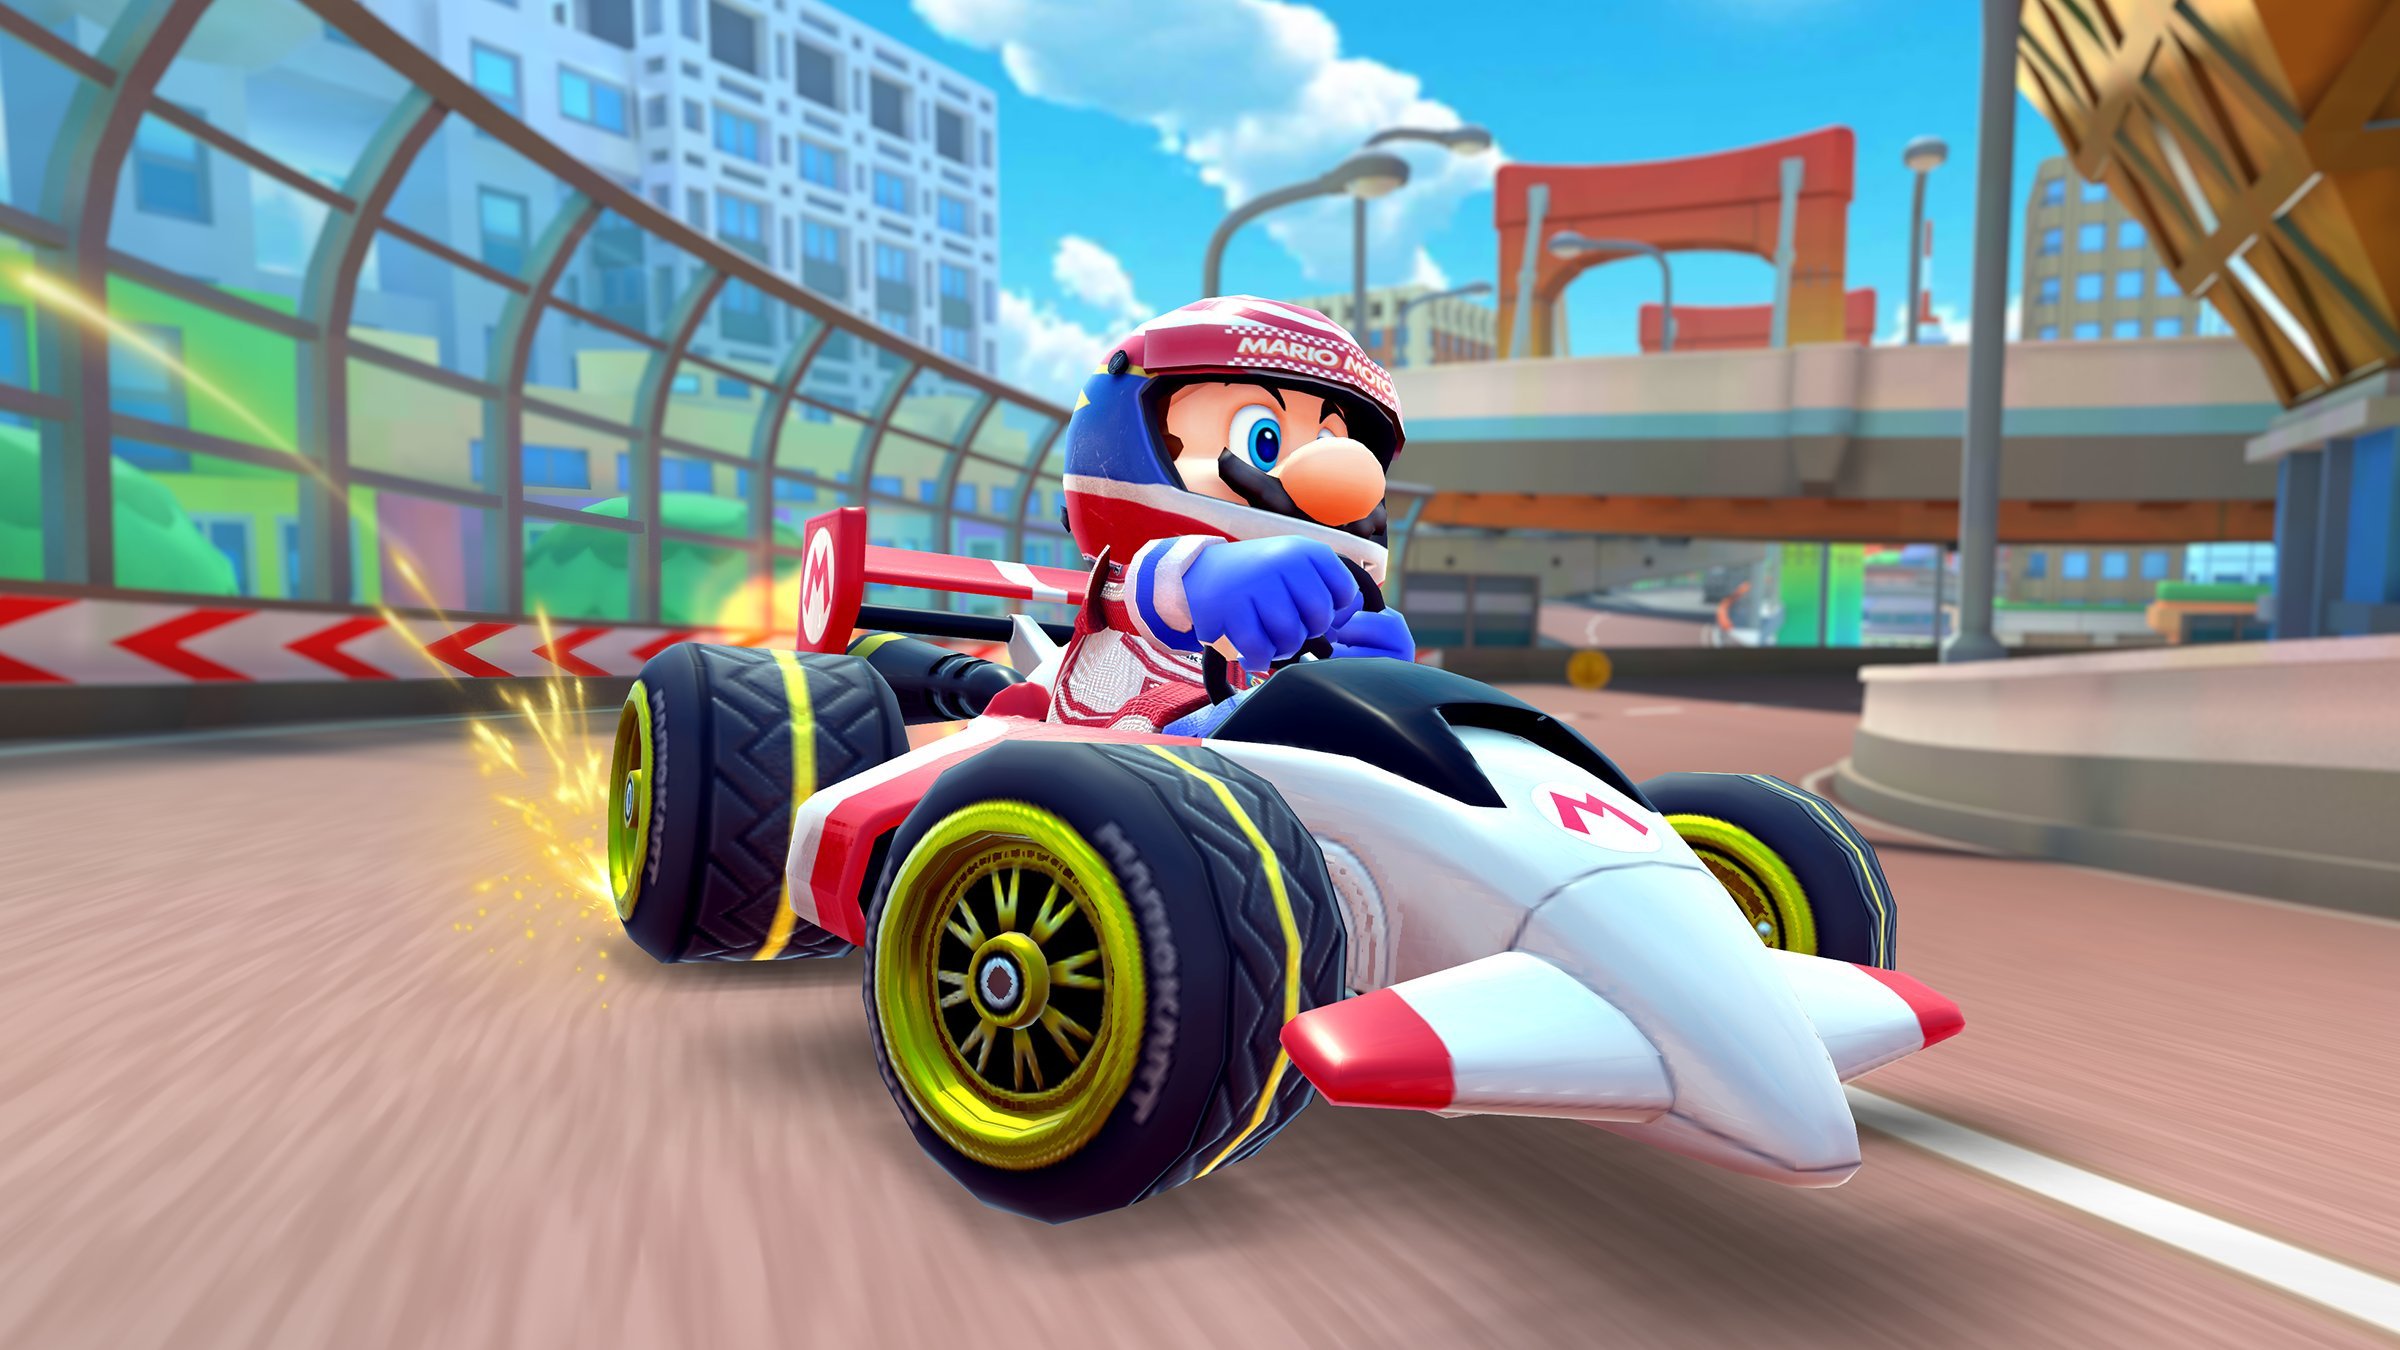 Mario Kart Tour Celebrates MAR10 Day With "The Mario Tour" Nintendo Life